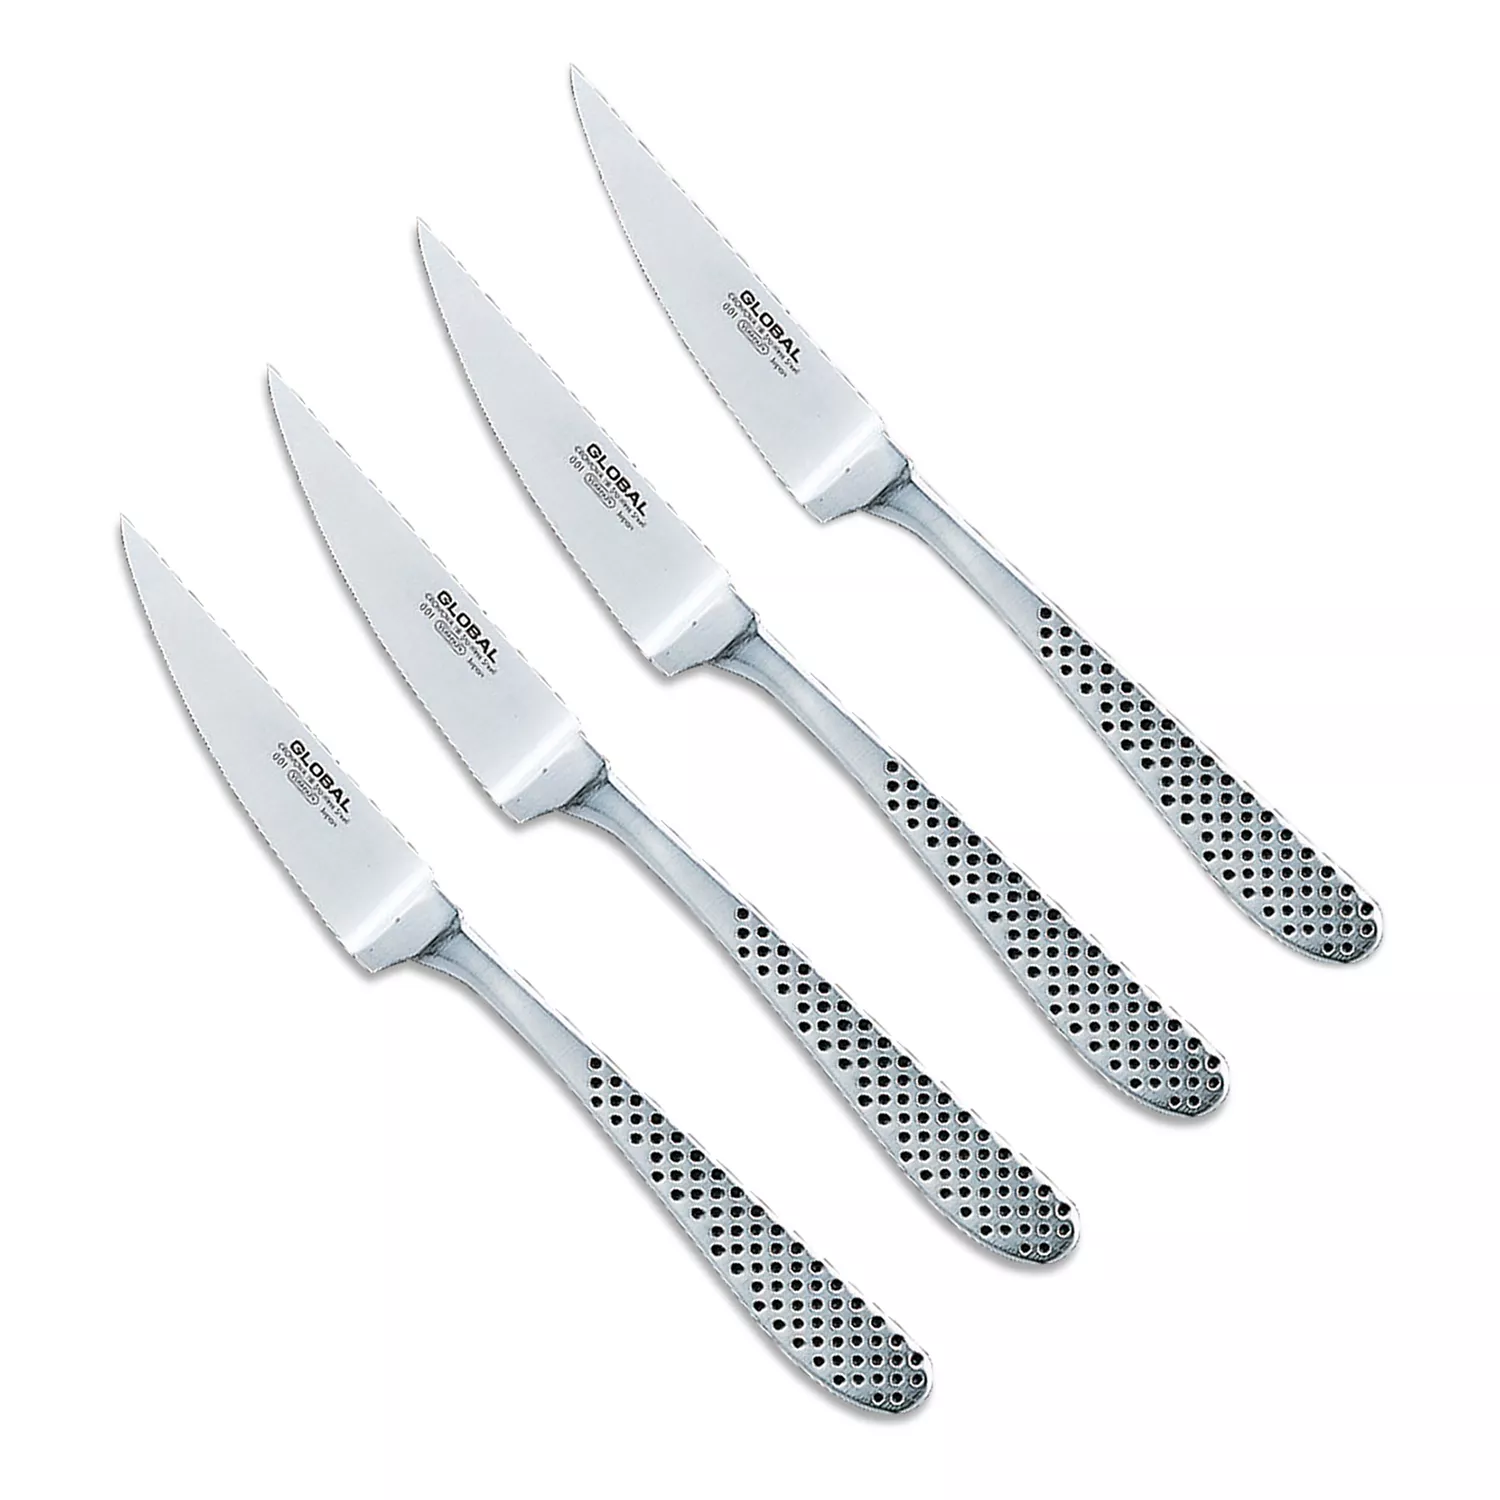 GLOBAL 4-Piece Steak Knife Sets, Cutlery